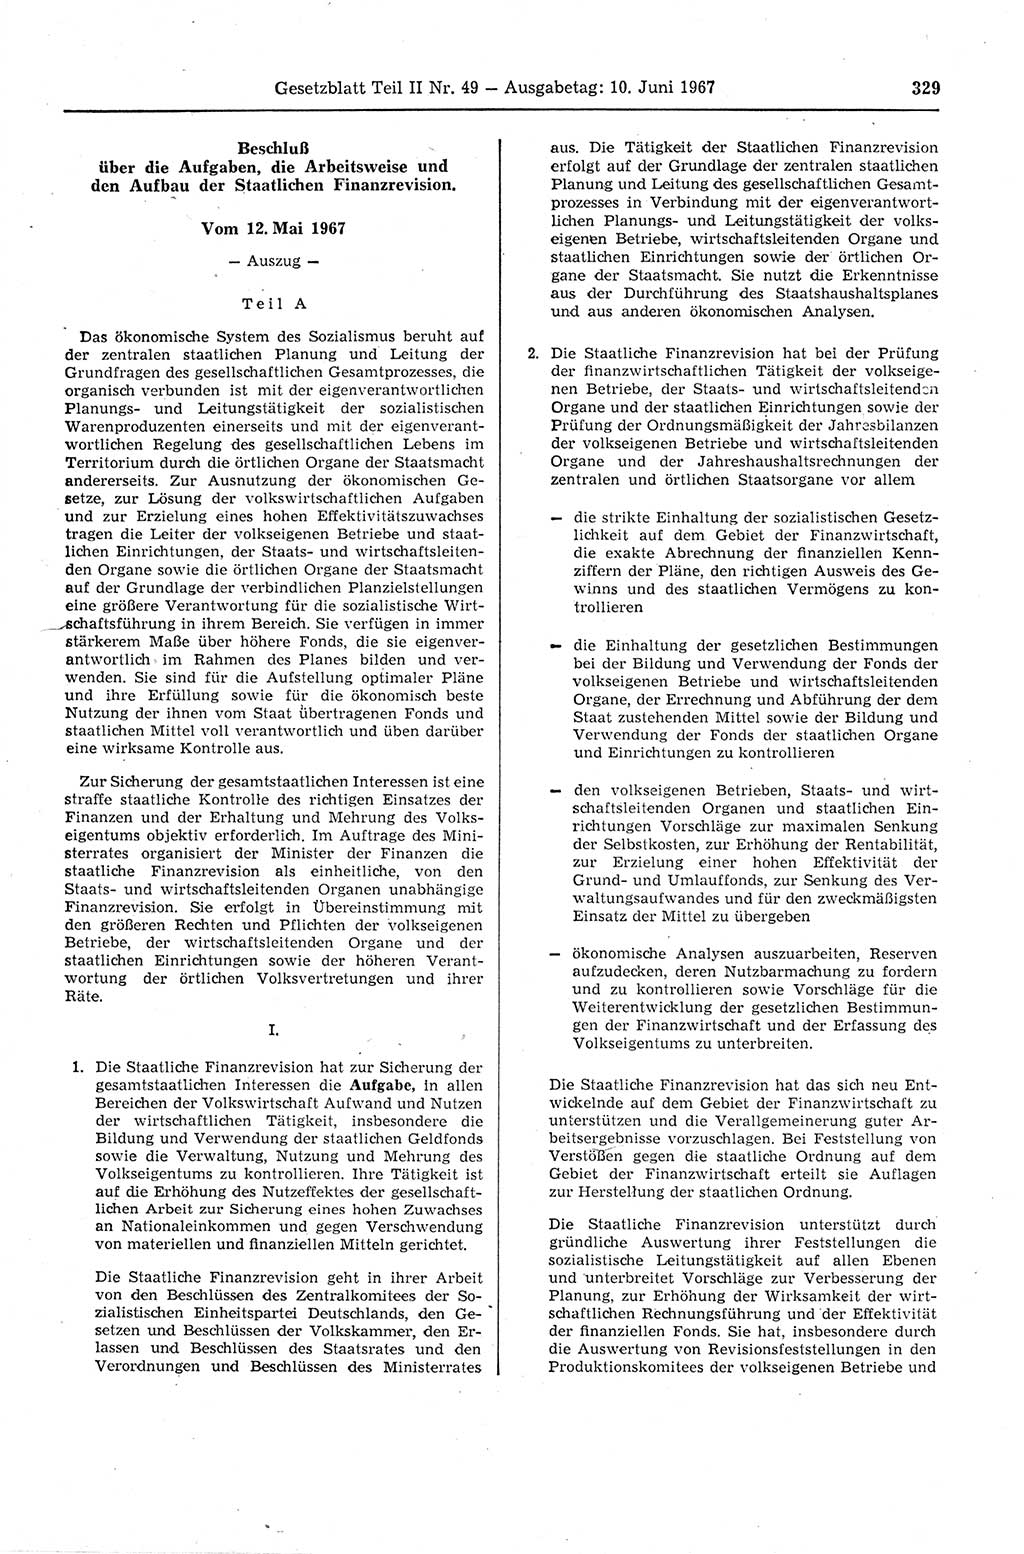 Gesetzblatt (GBl.) der Deutschen Demokratischen Republik (DDR) Teil ⅠⅠ 1967, Seite 329 (GBl. DDR ⅠⅠ 1967, S. 329)